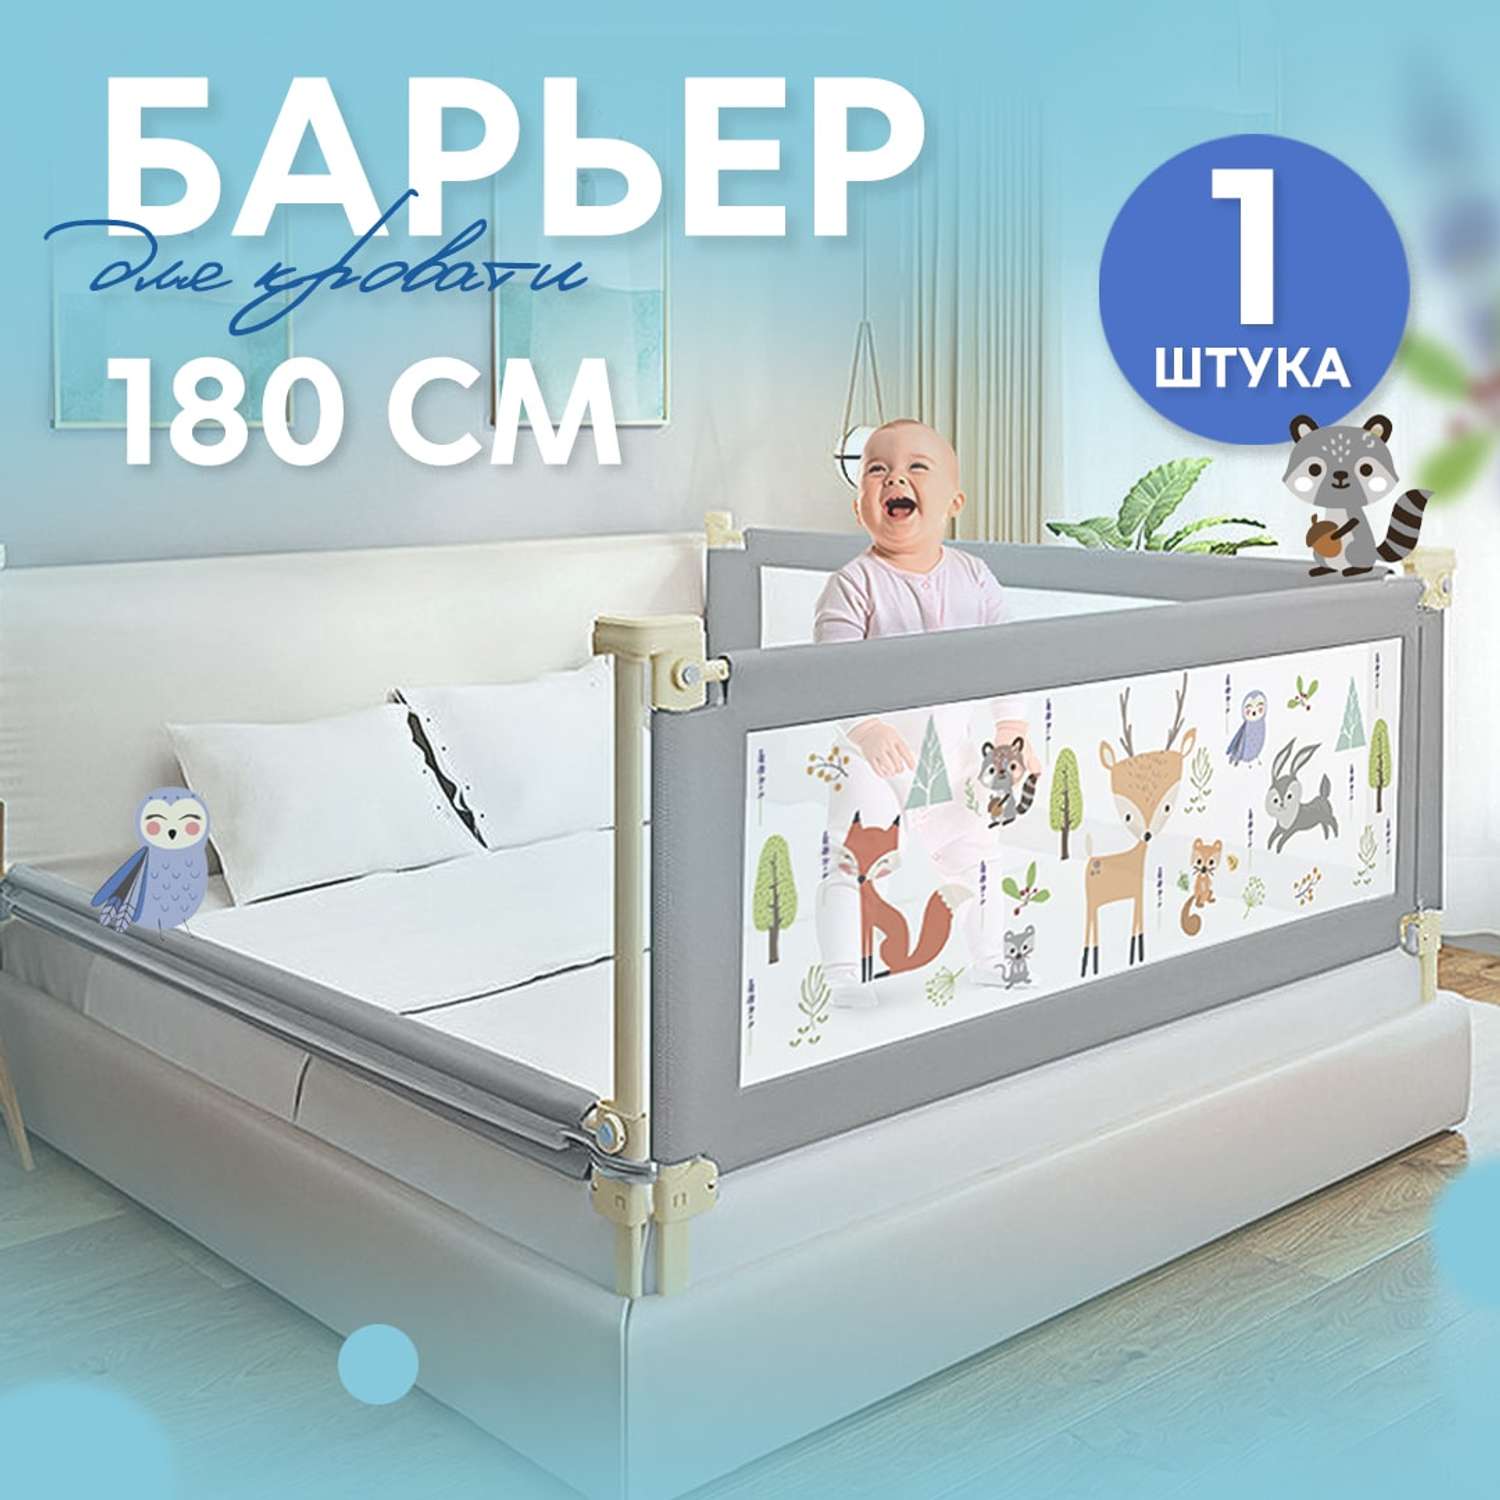 Защитный барьер детски1 CINLANKIDS для кровати 180 см 1 шт - фото 1